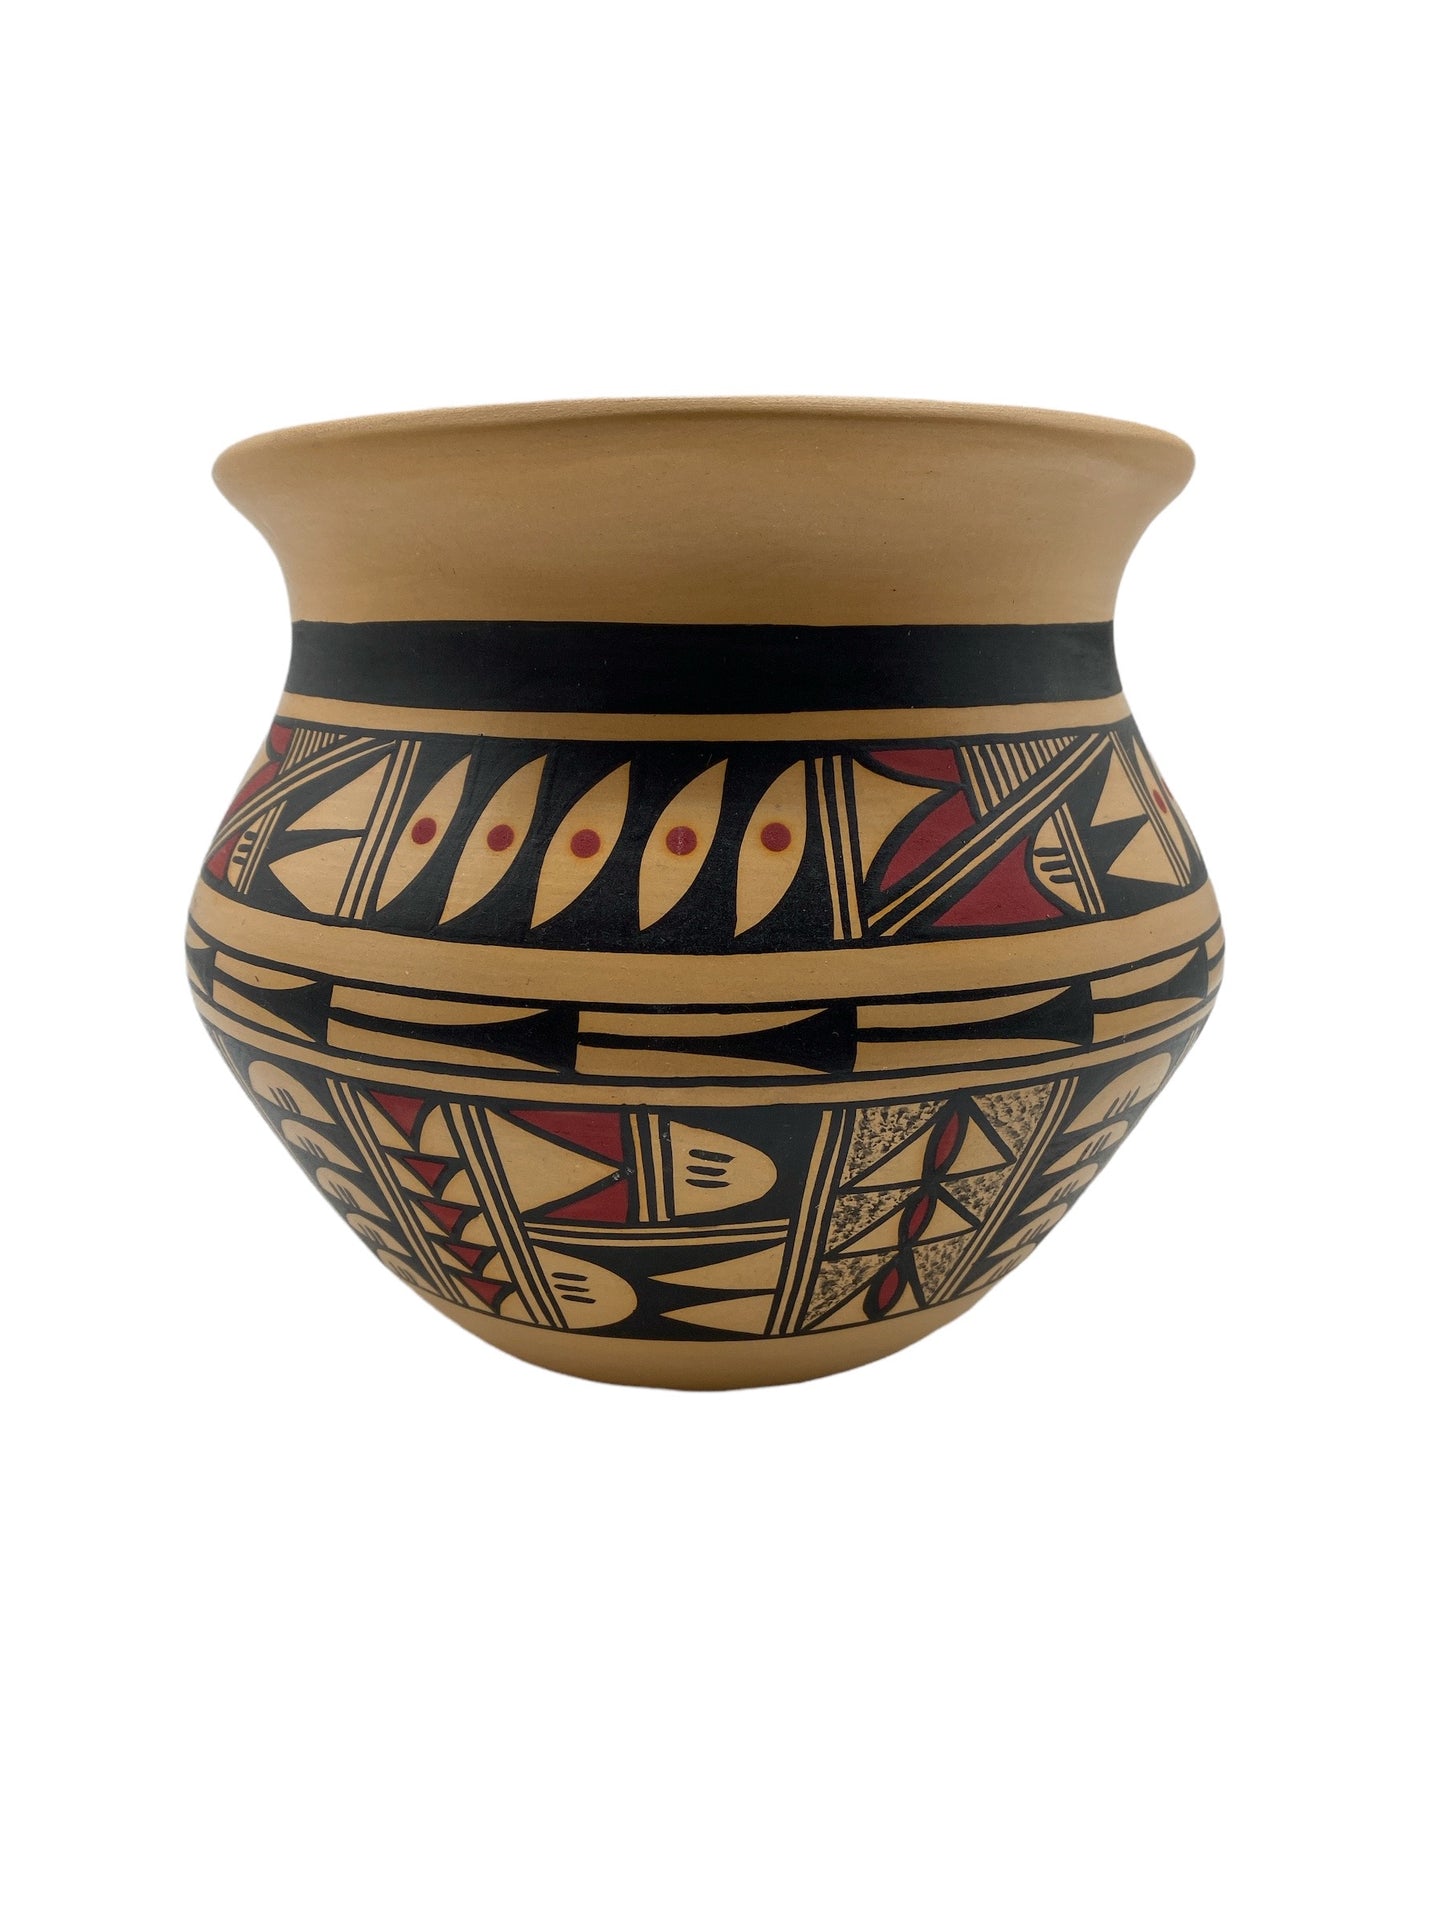 Alta Yesslith Hopi Pottery